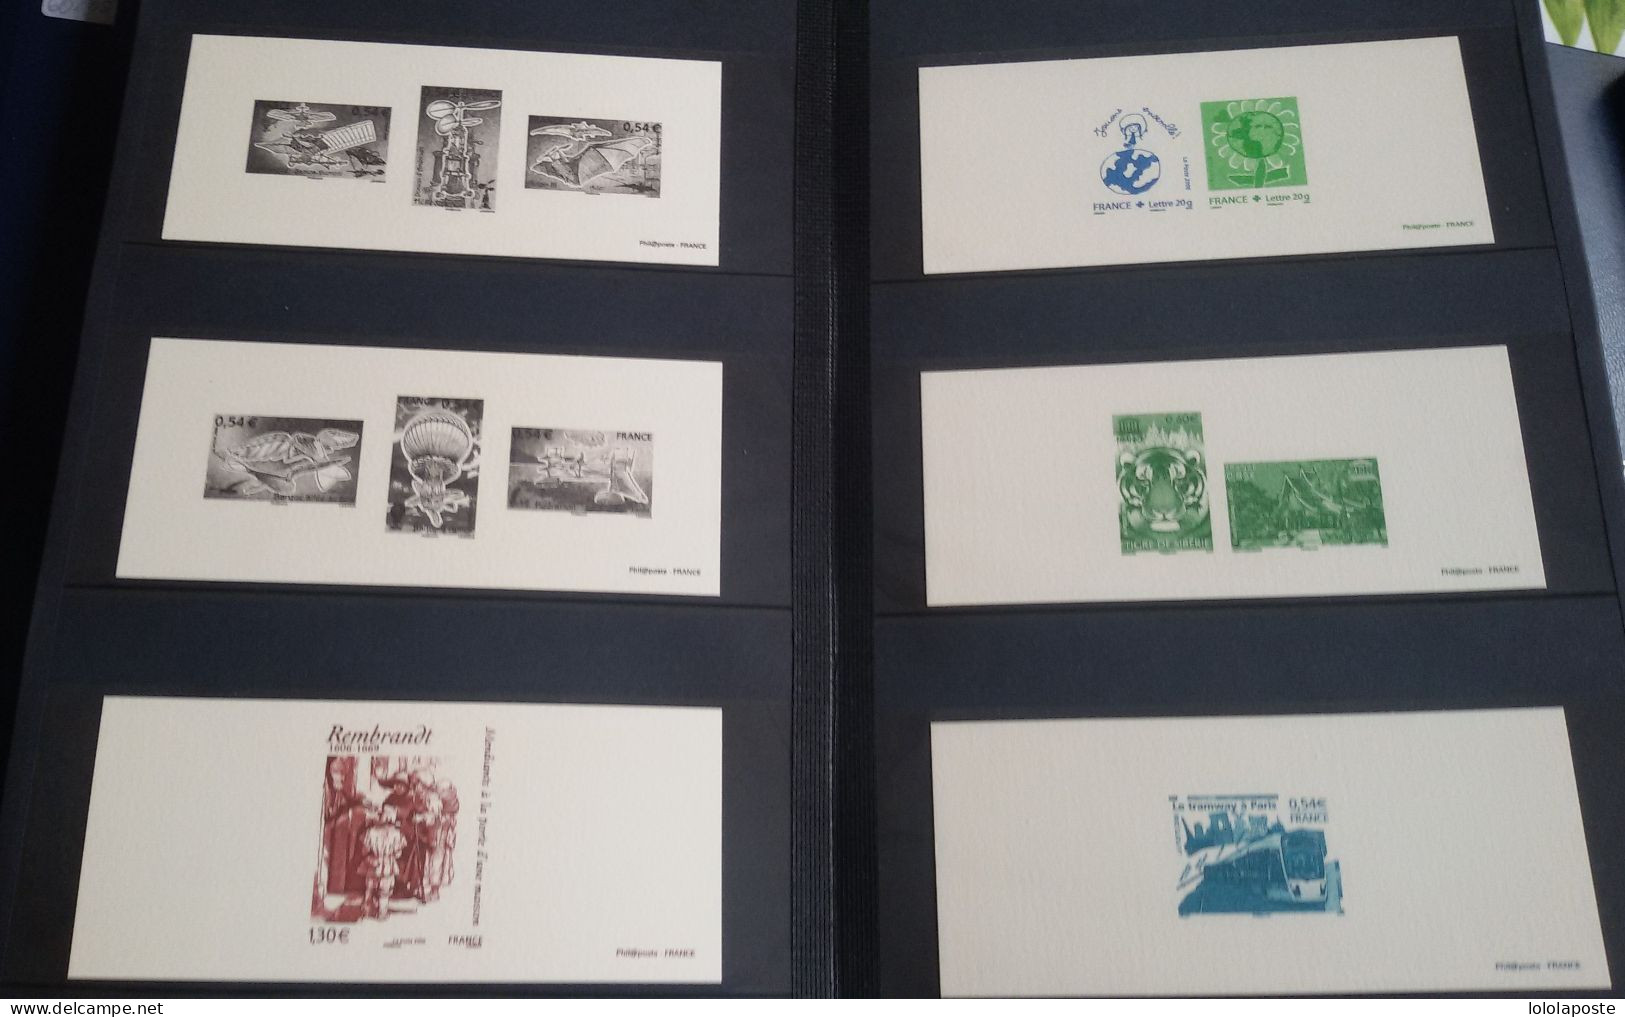 FRANCE -Collection de 876 gravures différentes de la poste dans 15 classeurs spécifiques de l'année 1995 à 2010 A SAISIR